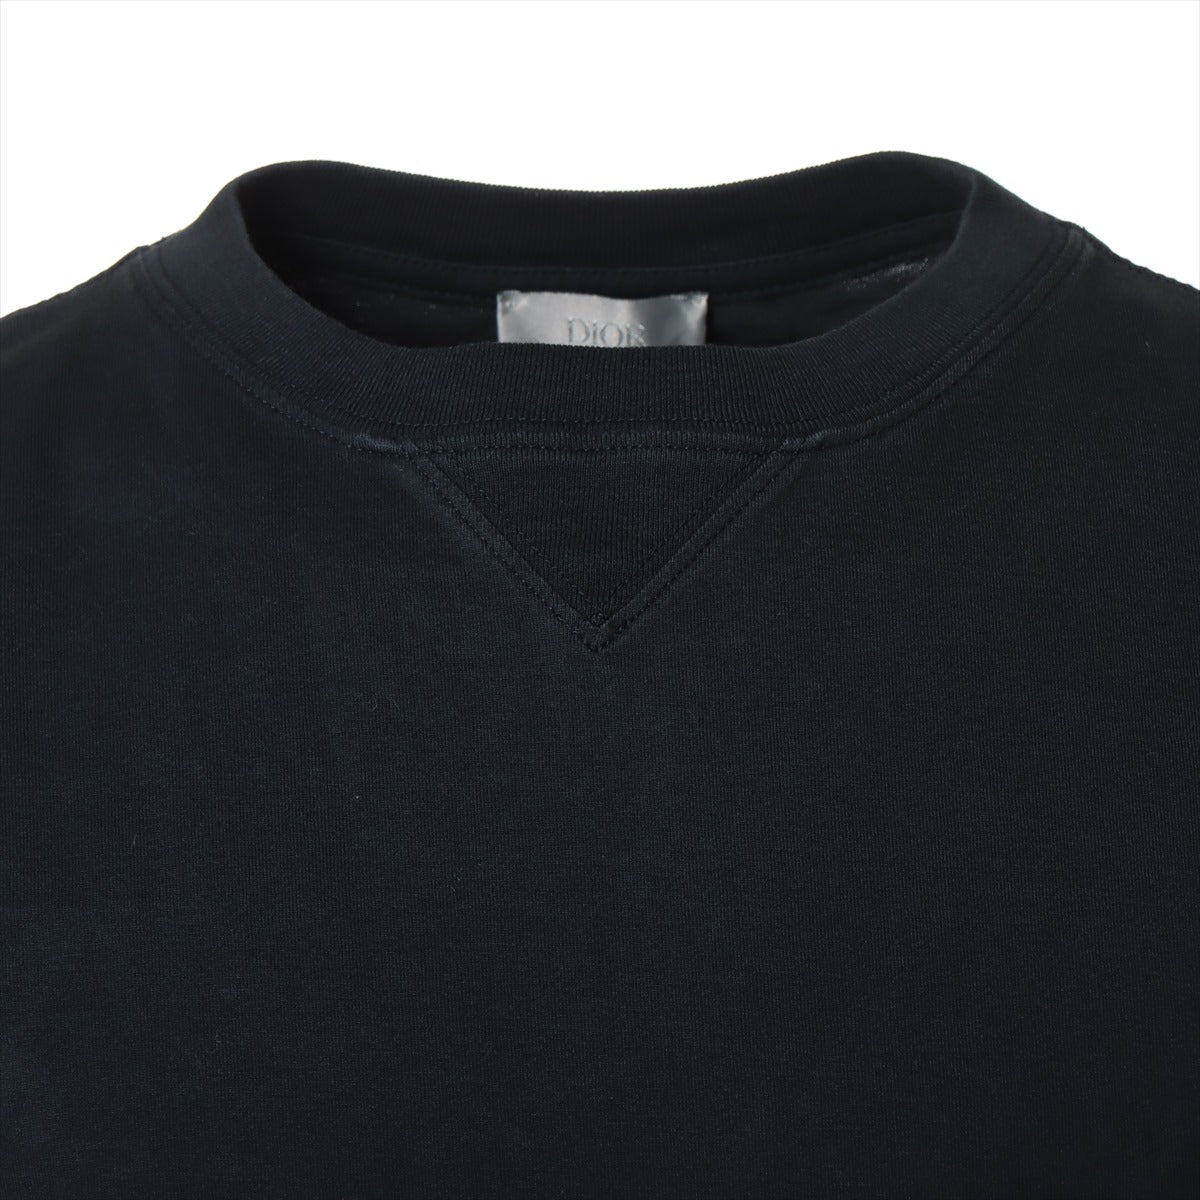 ディオール オブリーク 21SS コットン×シルク Tシャツ S メンズ ブラック×ネイビー  レイヤードオーバーサイズシャツ 113J632A0677